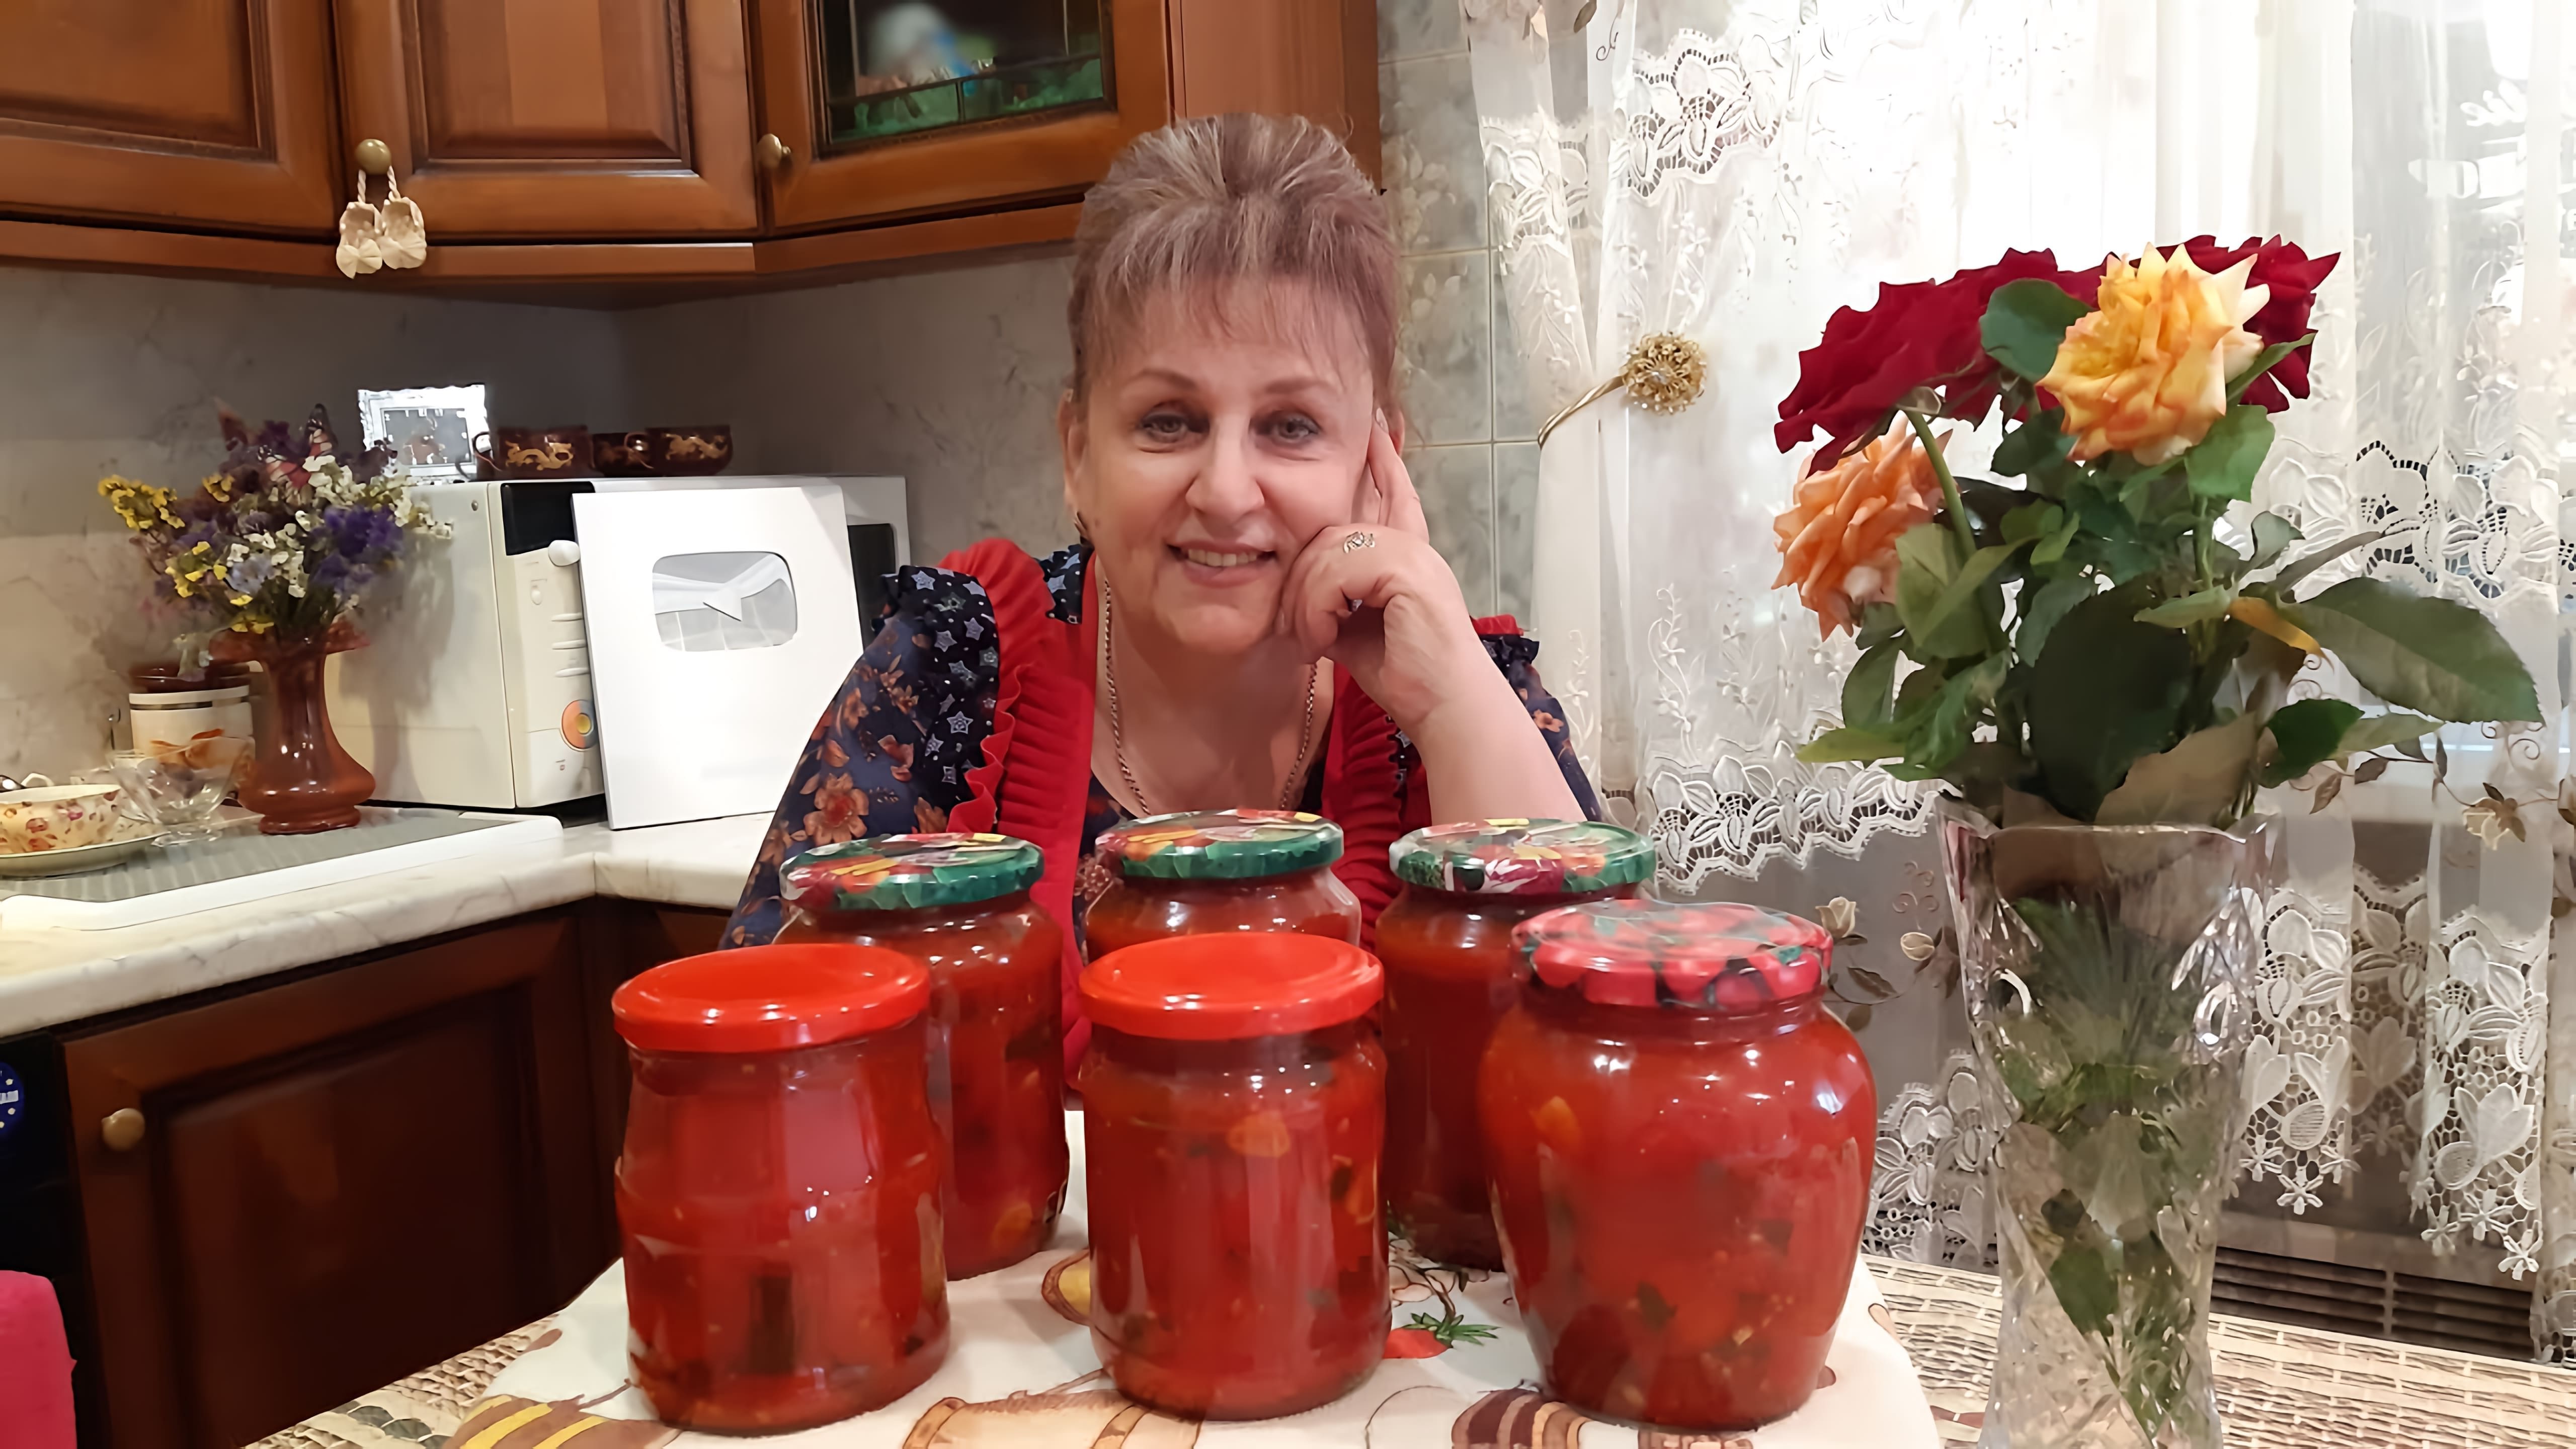 Видео как приготовить консервированный томатный и перцевый продукт под названием "Лечо" на зиму